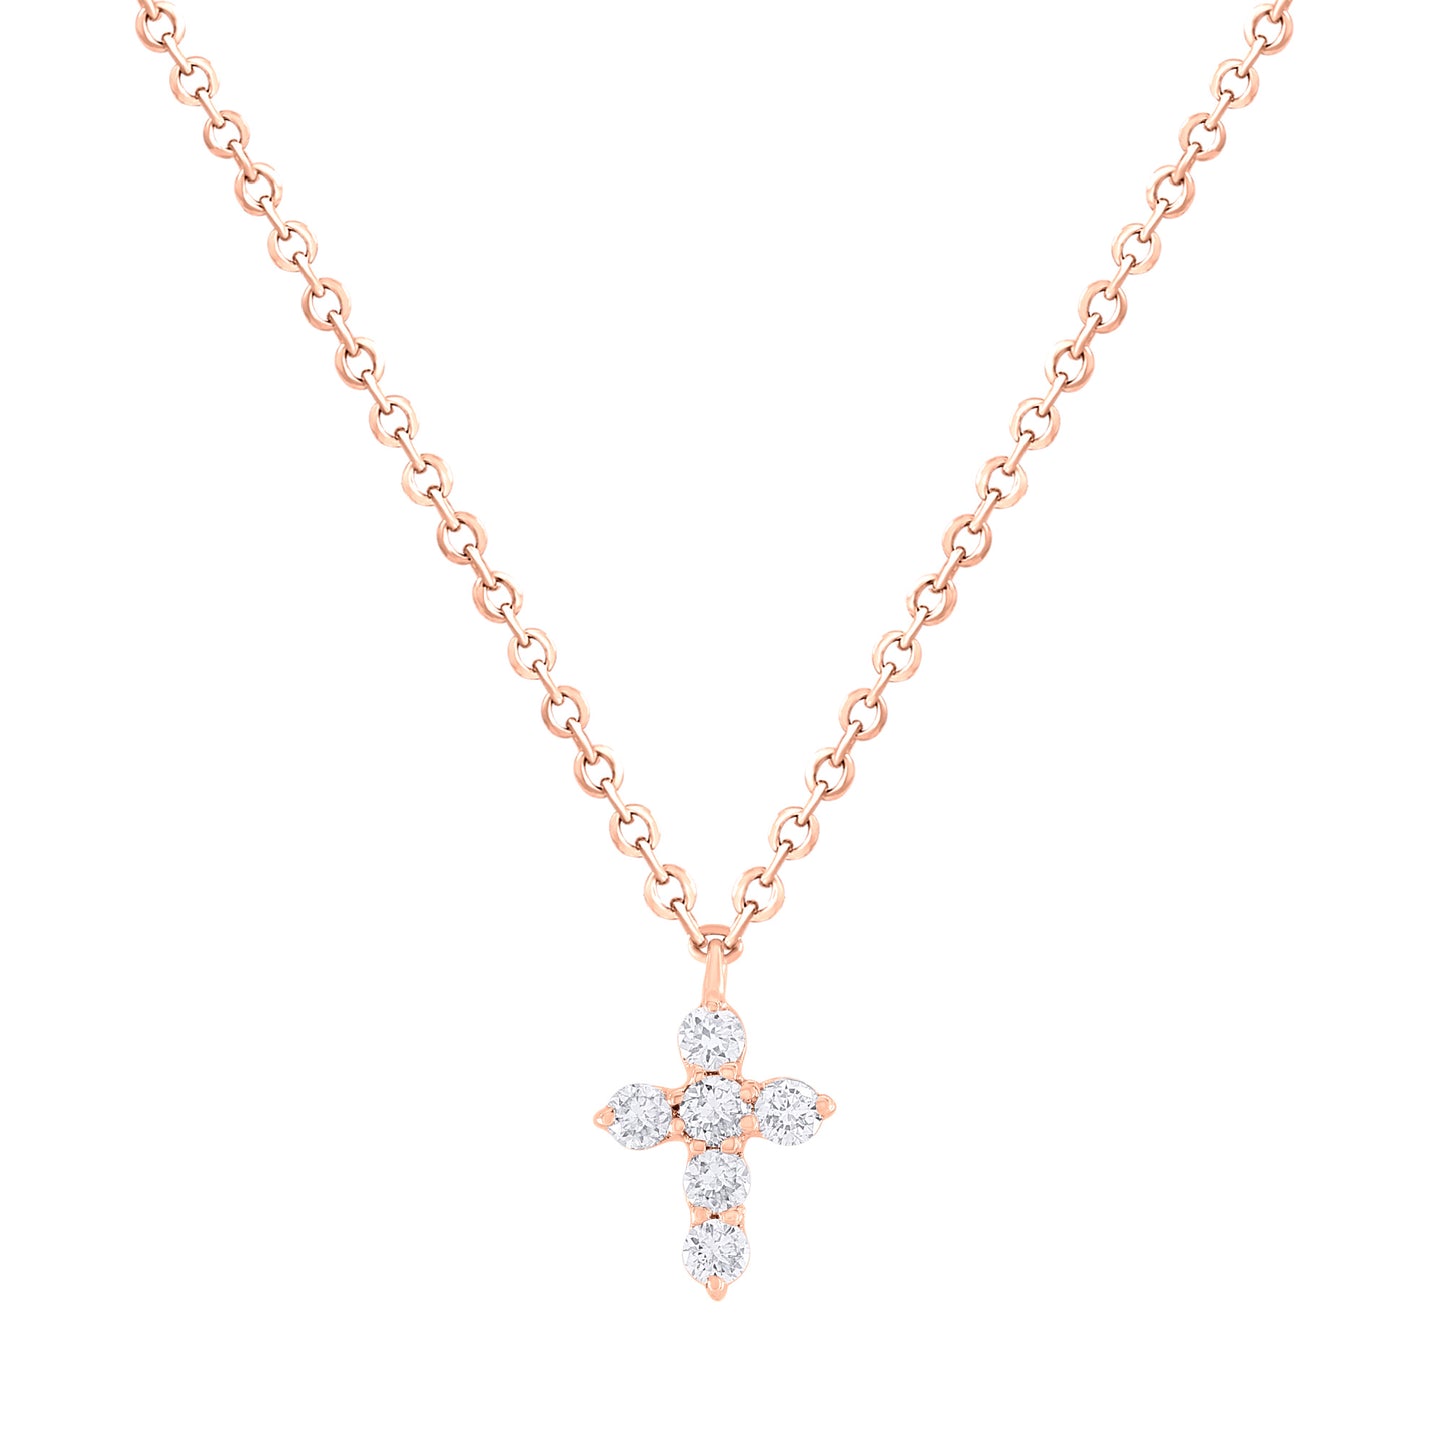 Mini-Miniature Diamond Cross Necklace